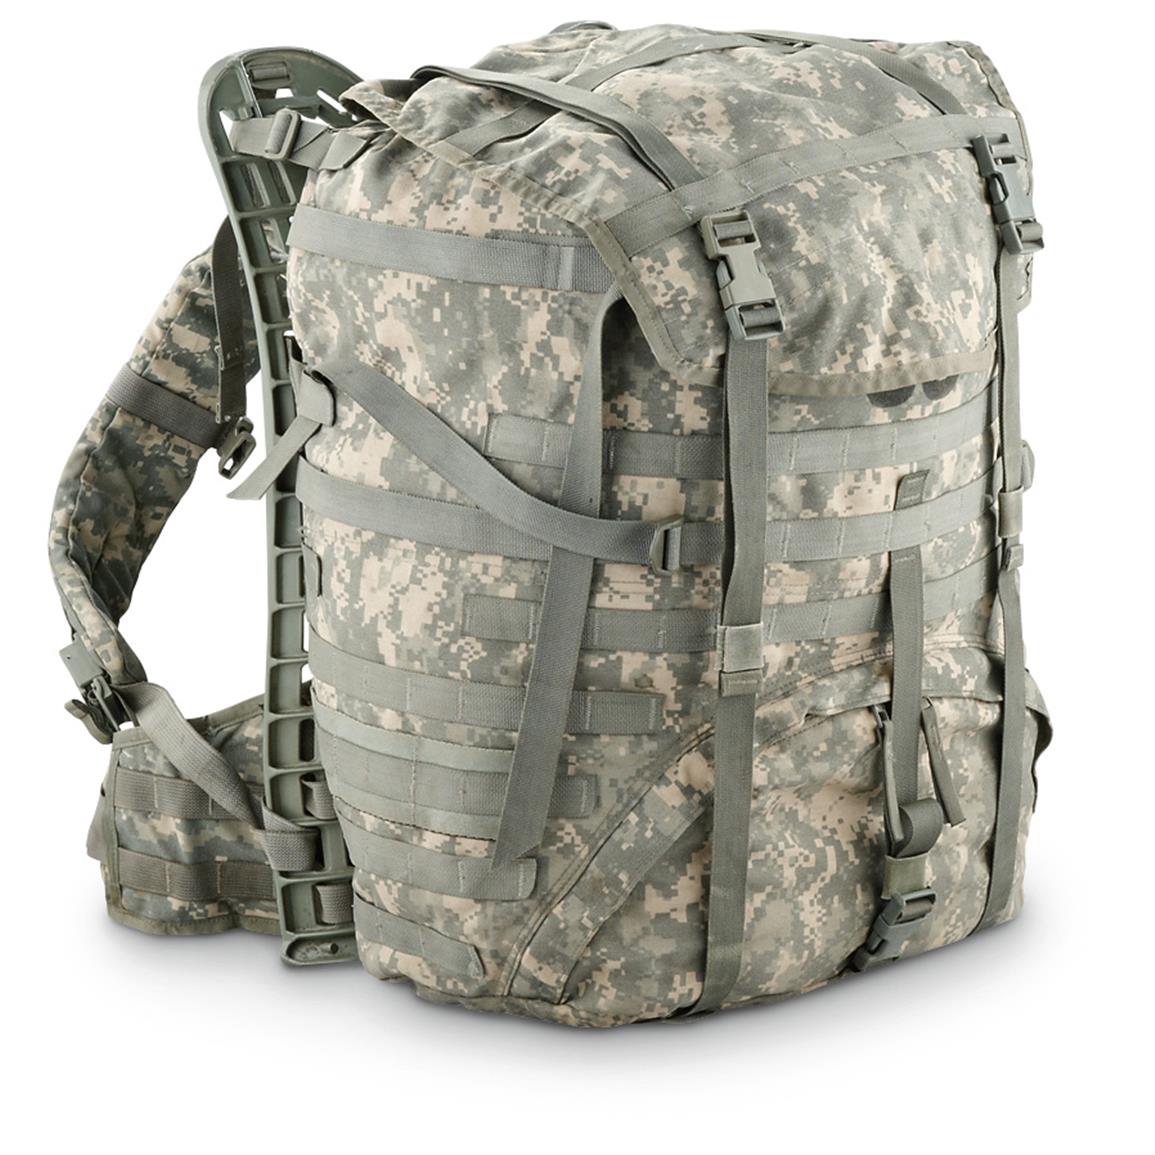 Used U.S. Military Surplus Framed Field Pack - 424622, Rucksacks & Backpacks at Sportsman&#39;s Guide